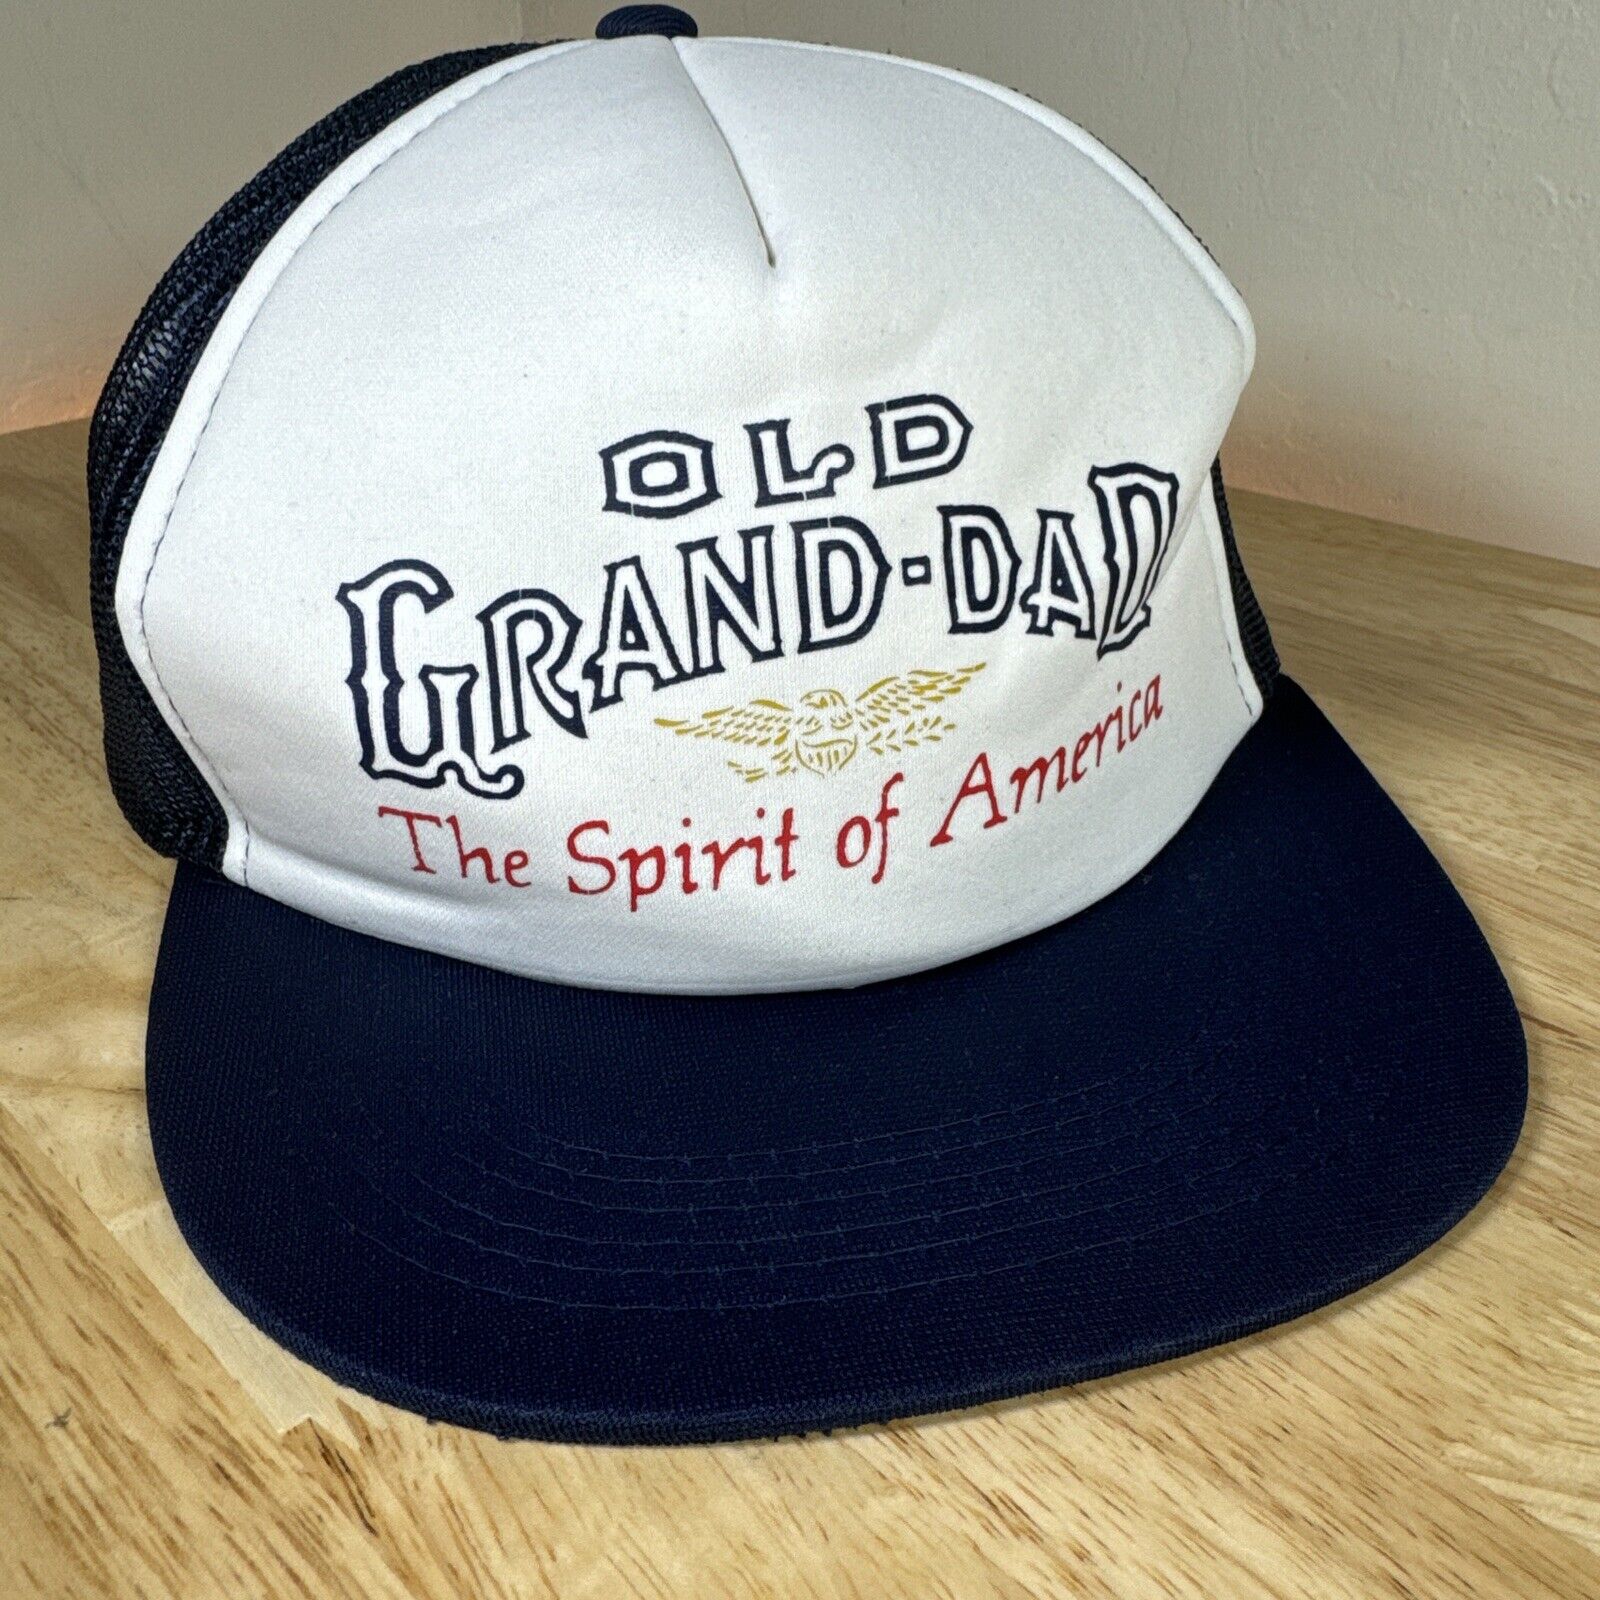 Vintage NEW Old Grand-Dad Whiskey Trucker Hat - The Spirit Of America, Jemcor